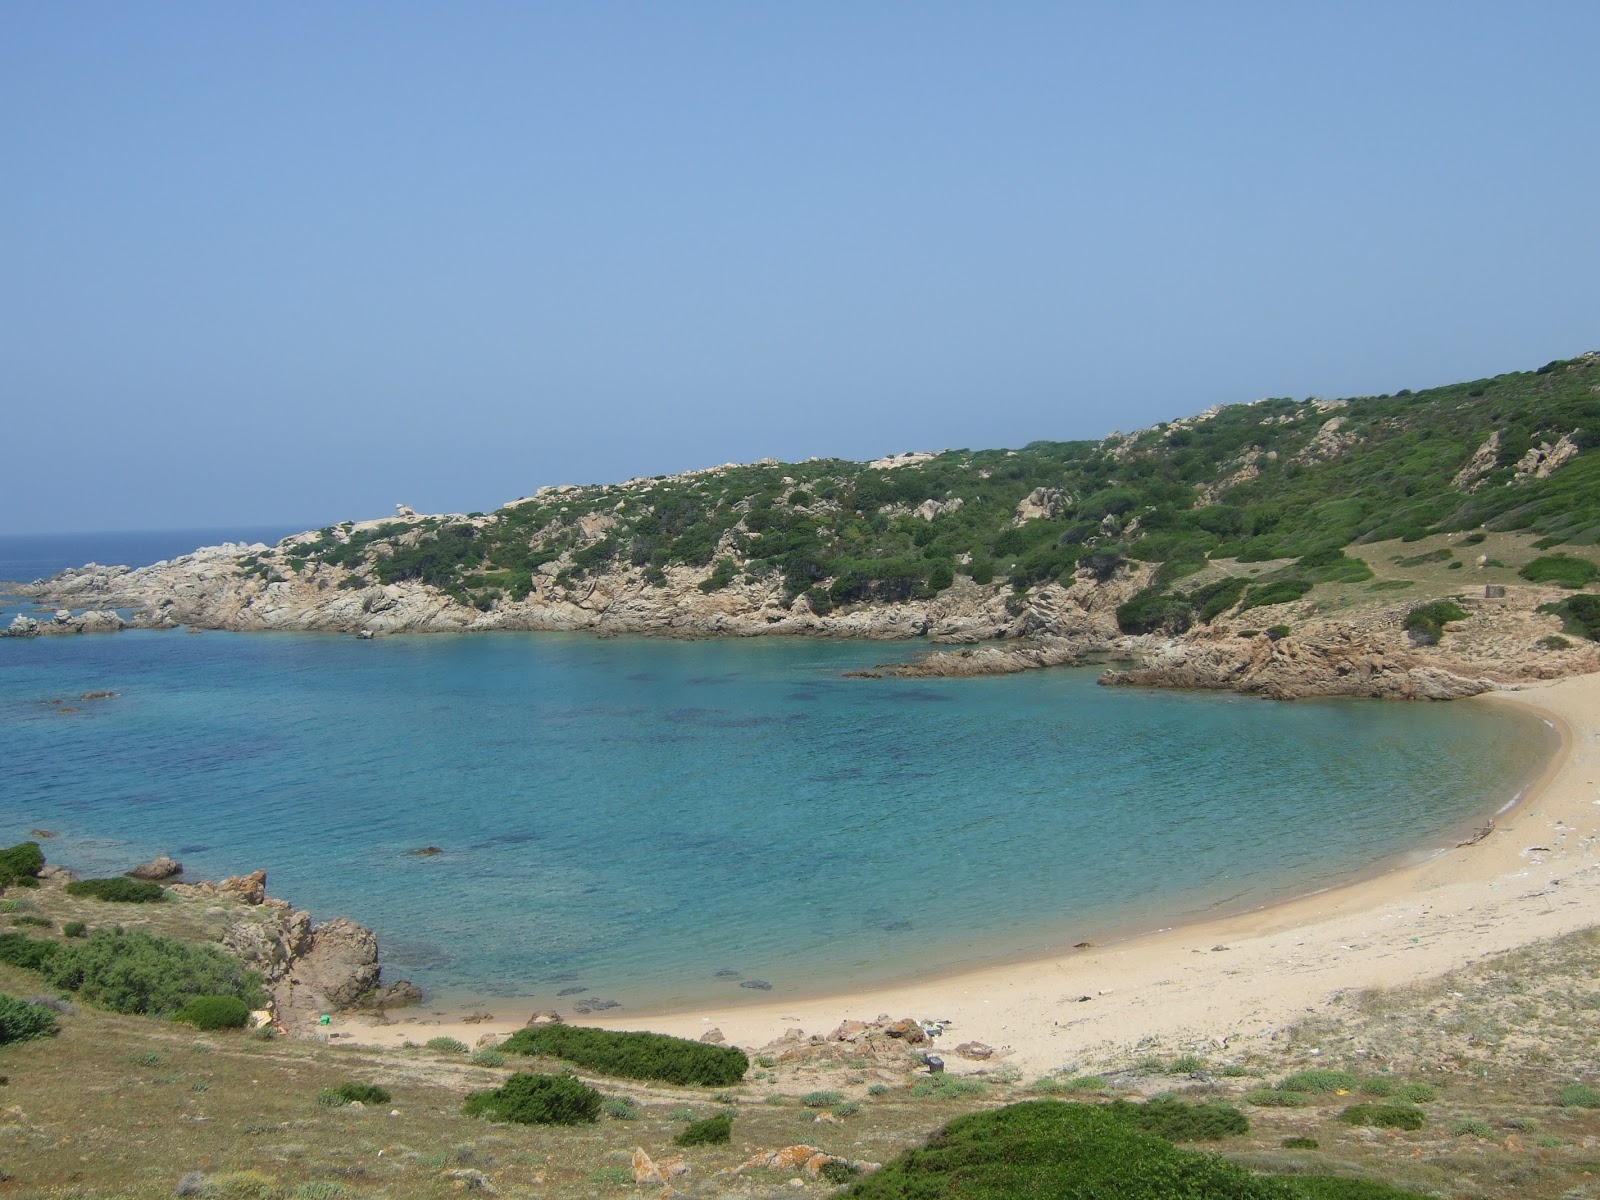 Photo of Spiaggia La Niculina located in natural area